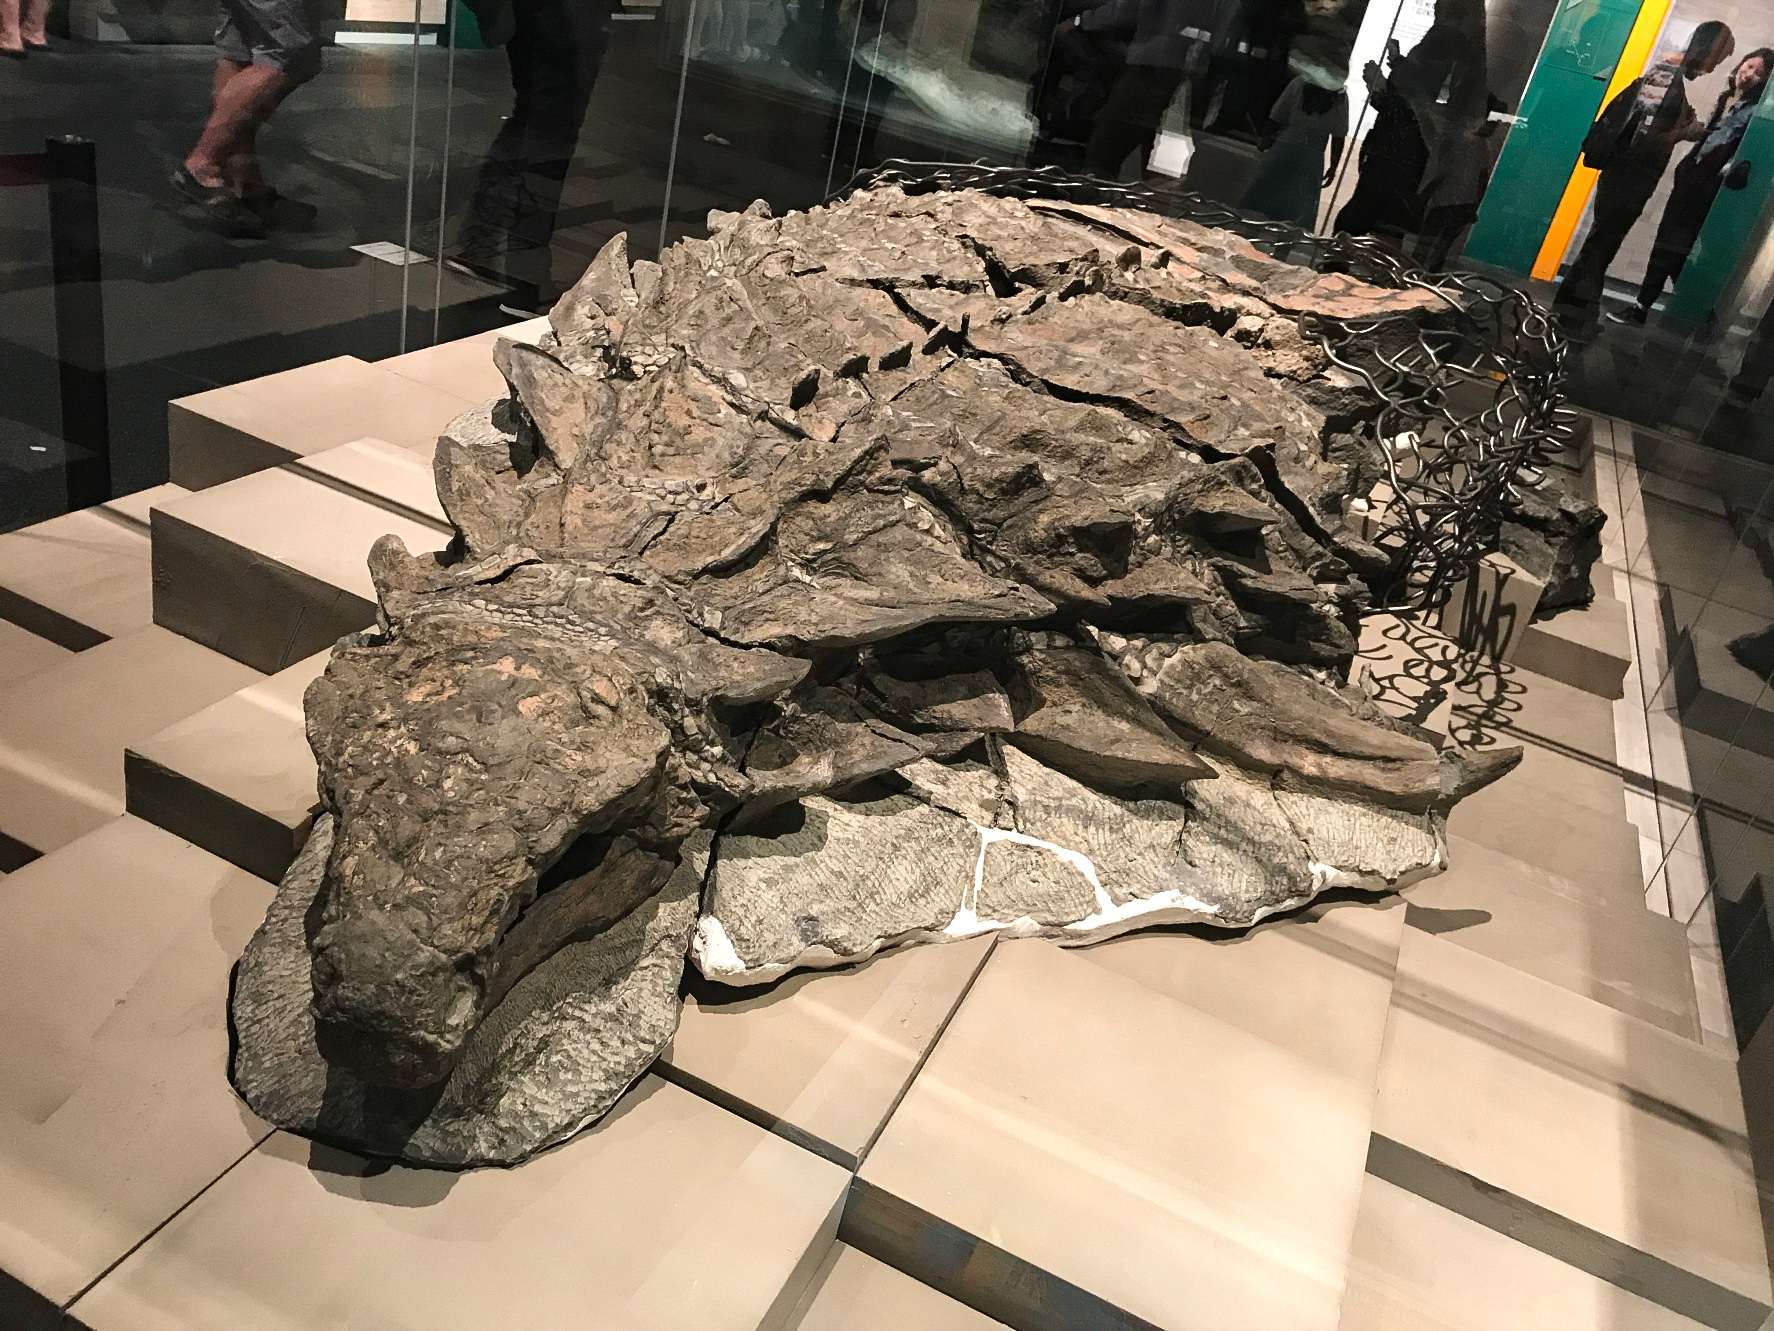 Το Borealopelta (που σημαίνει "Βόρεια ασπίδα") είναι ένα γένος αγκυλόσαυρων οζοσαυρίδων από την Πρώιμη Κρητιδική περίοδο της Αλμπέρτα του Καναδά. Περιέχει ένα μεμονωμένο είδος, το B. markmitchelli, το οποίο ονομάστηκε το 2017 από τον Caleb Brown και τους συνεργάτες του από ένα καλοδιατηρημένο δείγμα γνωστό ως Suncor nodosaur.